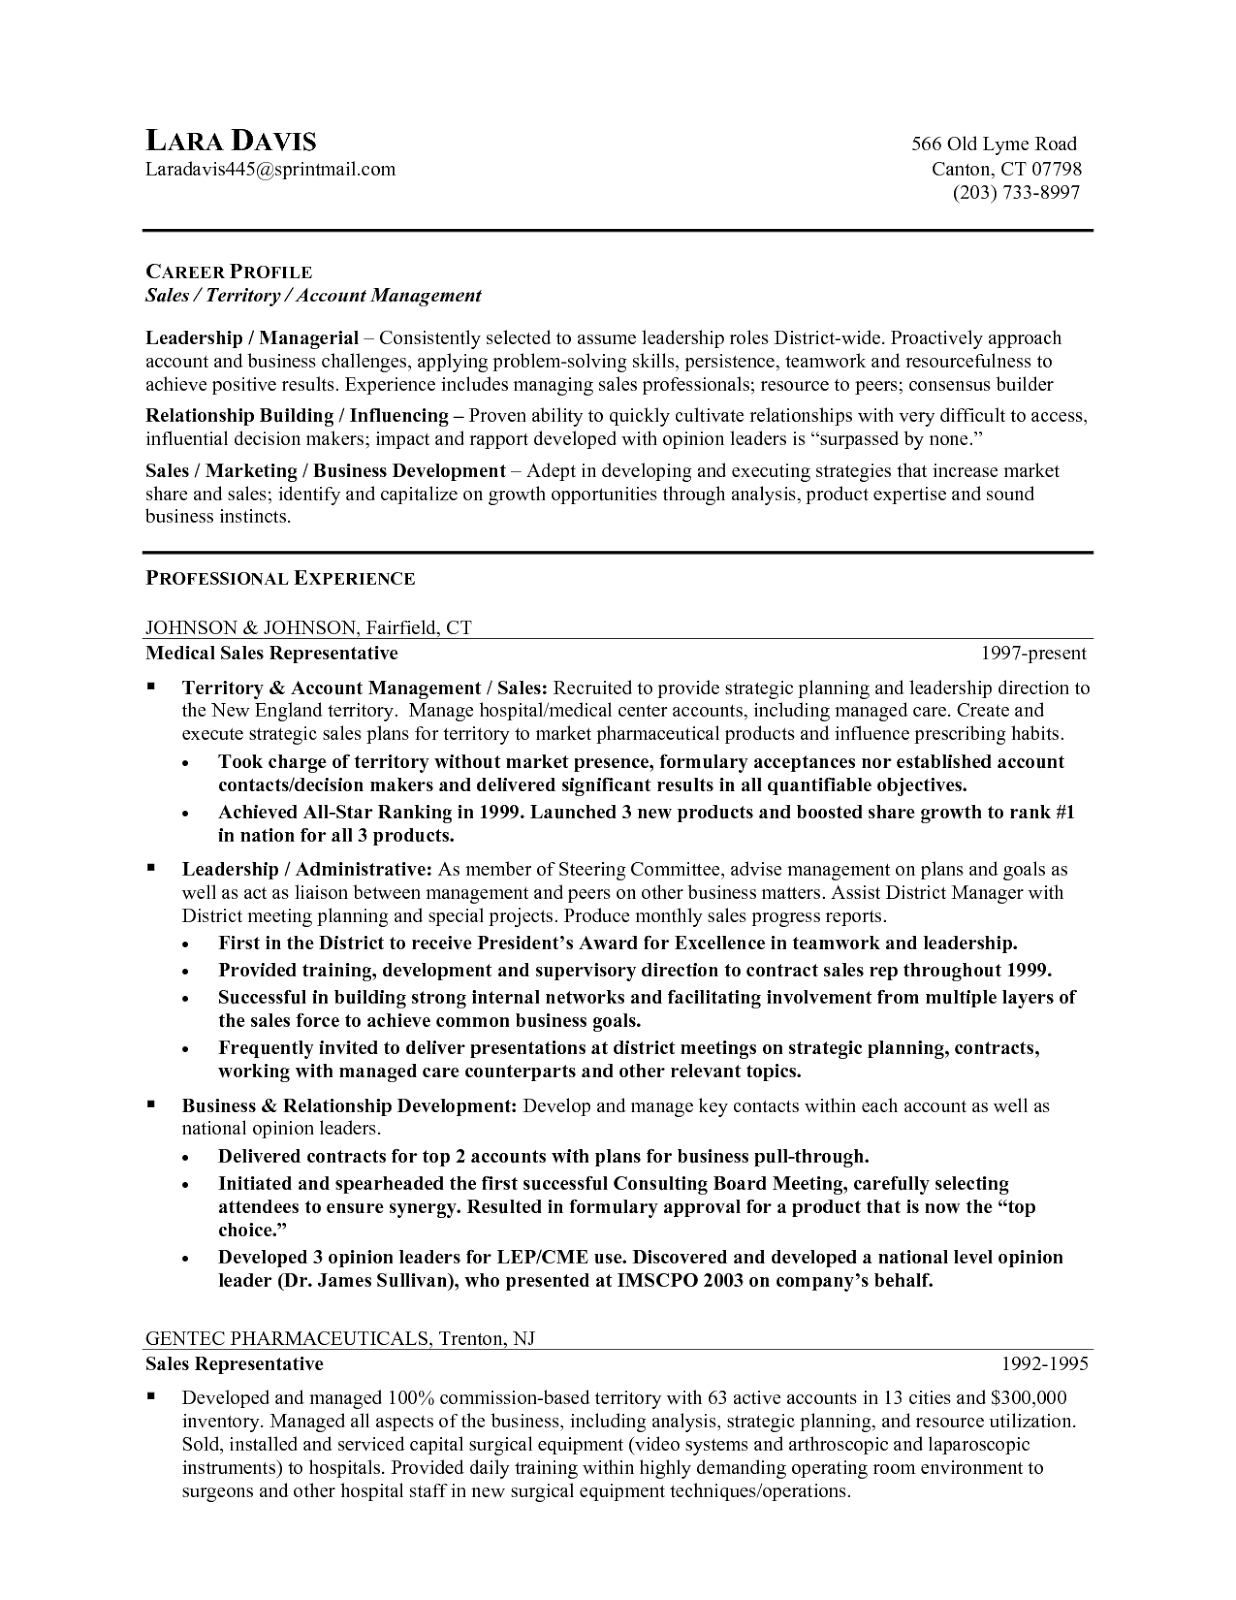 Resume objectives for supervisor